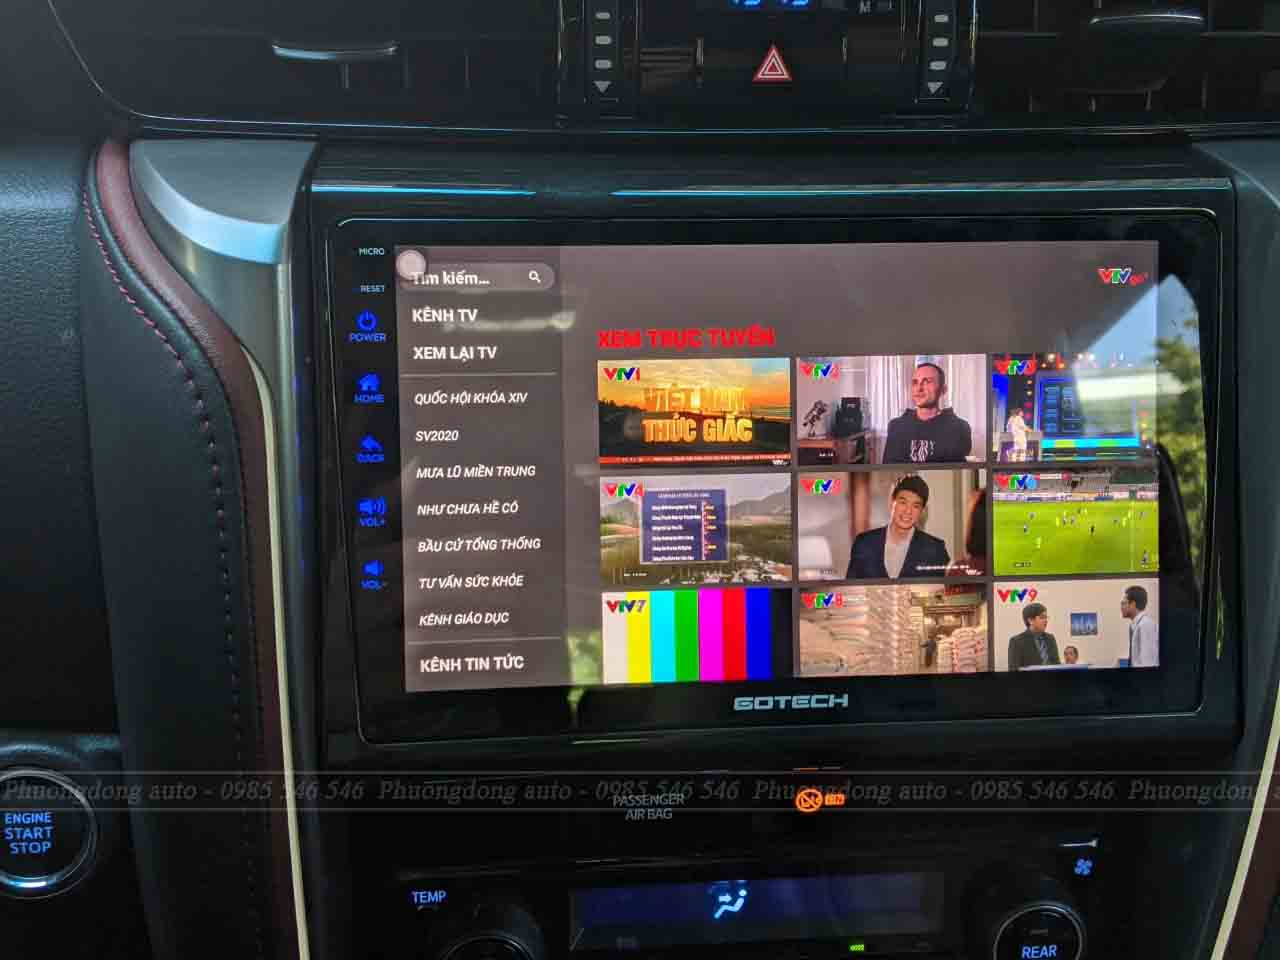 Bộ đôi sản phẩm Cam 360 DCT và màn hình Gotech được lắp đặt trên chiếc xe Fortuner Legender để thay thế cho màn và cam theo xe đã nâng tầm chiếc xe lên một tầm cao mới. Nâng cấp các tính năng giải trí và hỗ trợ lái xe an toàn cho mọi chiếc xe.